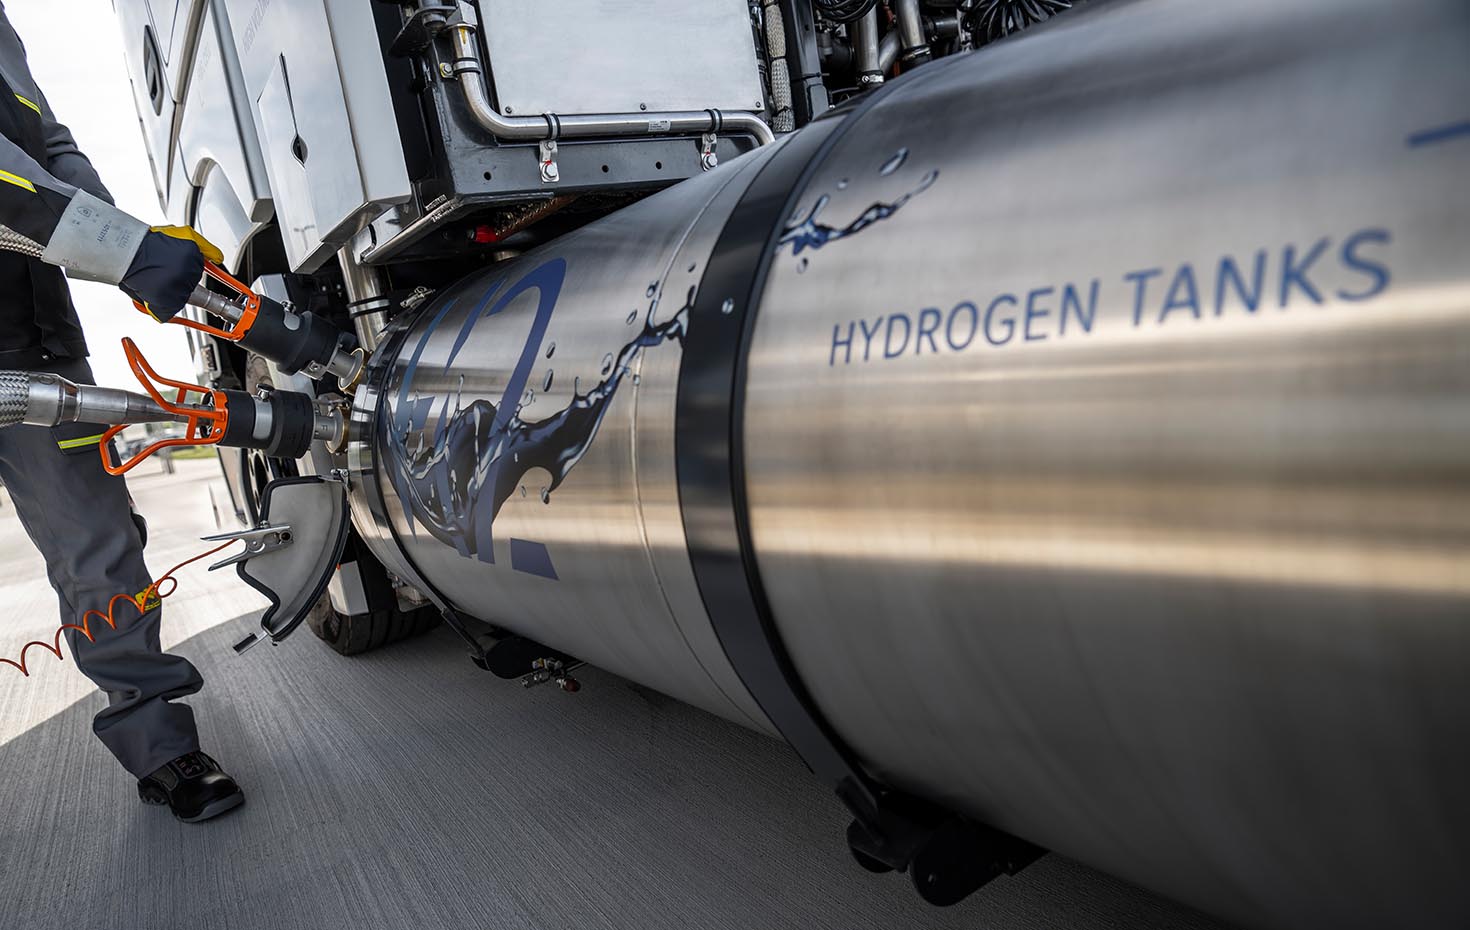 Mercedes GenH2 Hydrogen Tanks für Flüssigwasserstoff